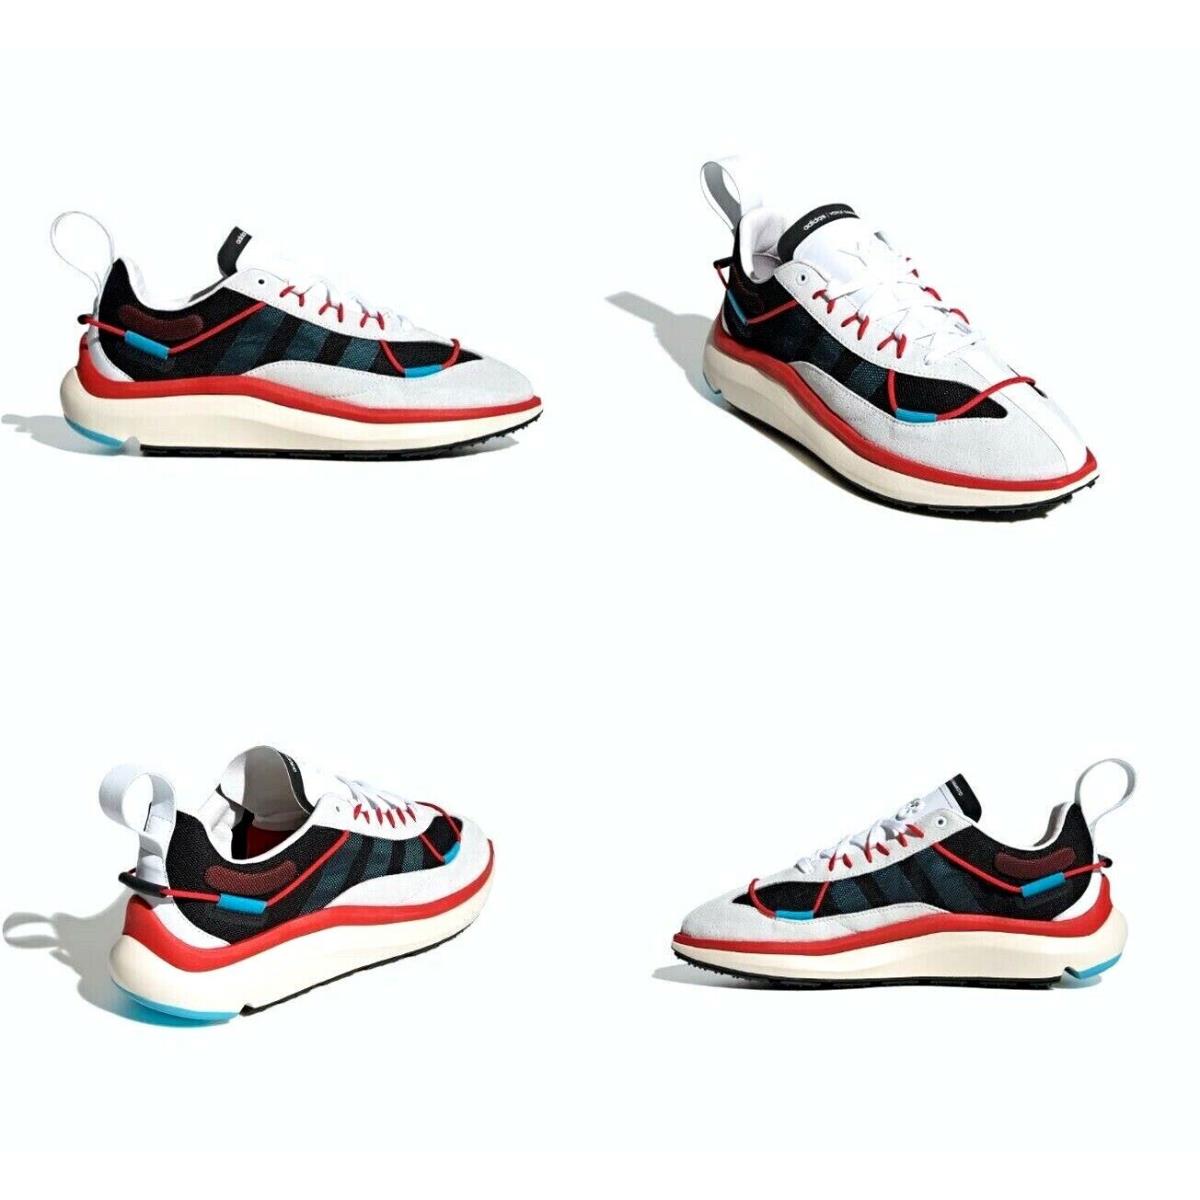 Adidas X Y-3 Shiku Run Suede Mesh Shoes Black/cyan/red Mens Size 10.5 Wms 11.5